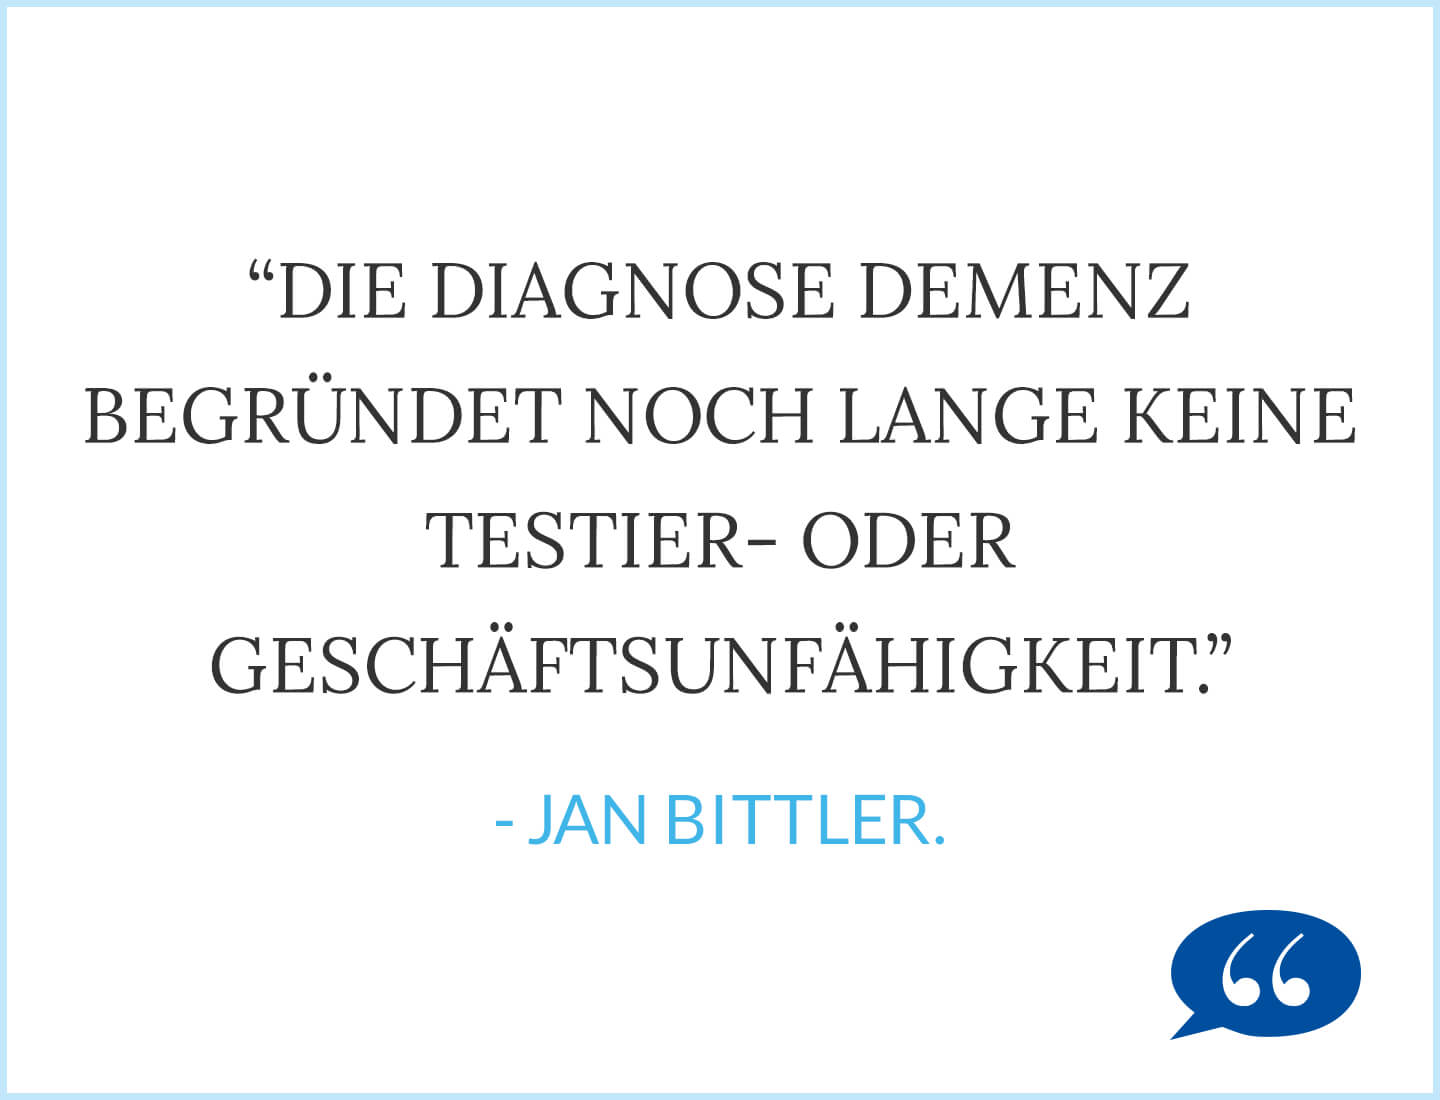 Zitat: Die Diagnose Demenz begründet noch lange keine Testier- oder Geschäftsunfähigkeit. - Jan Bittler